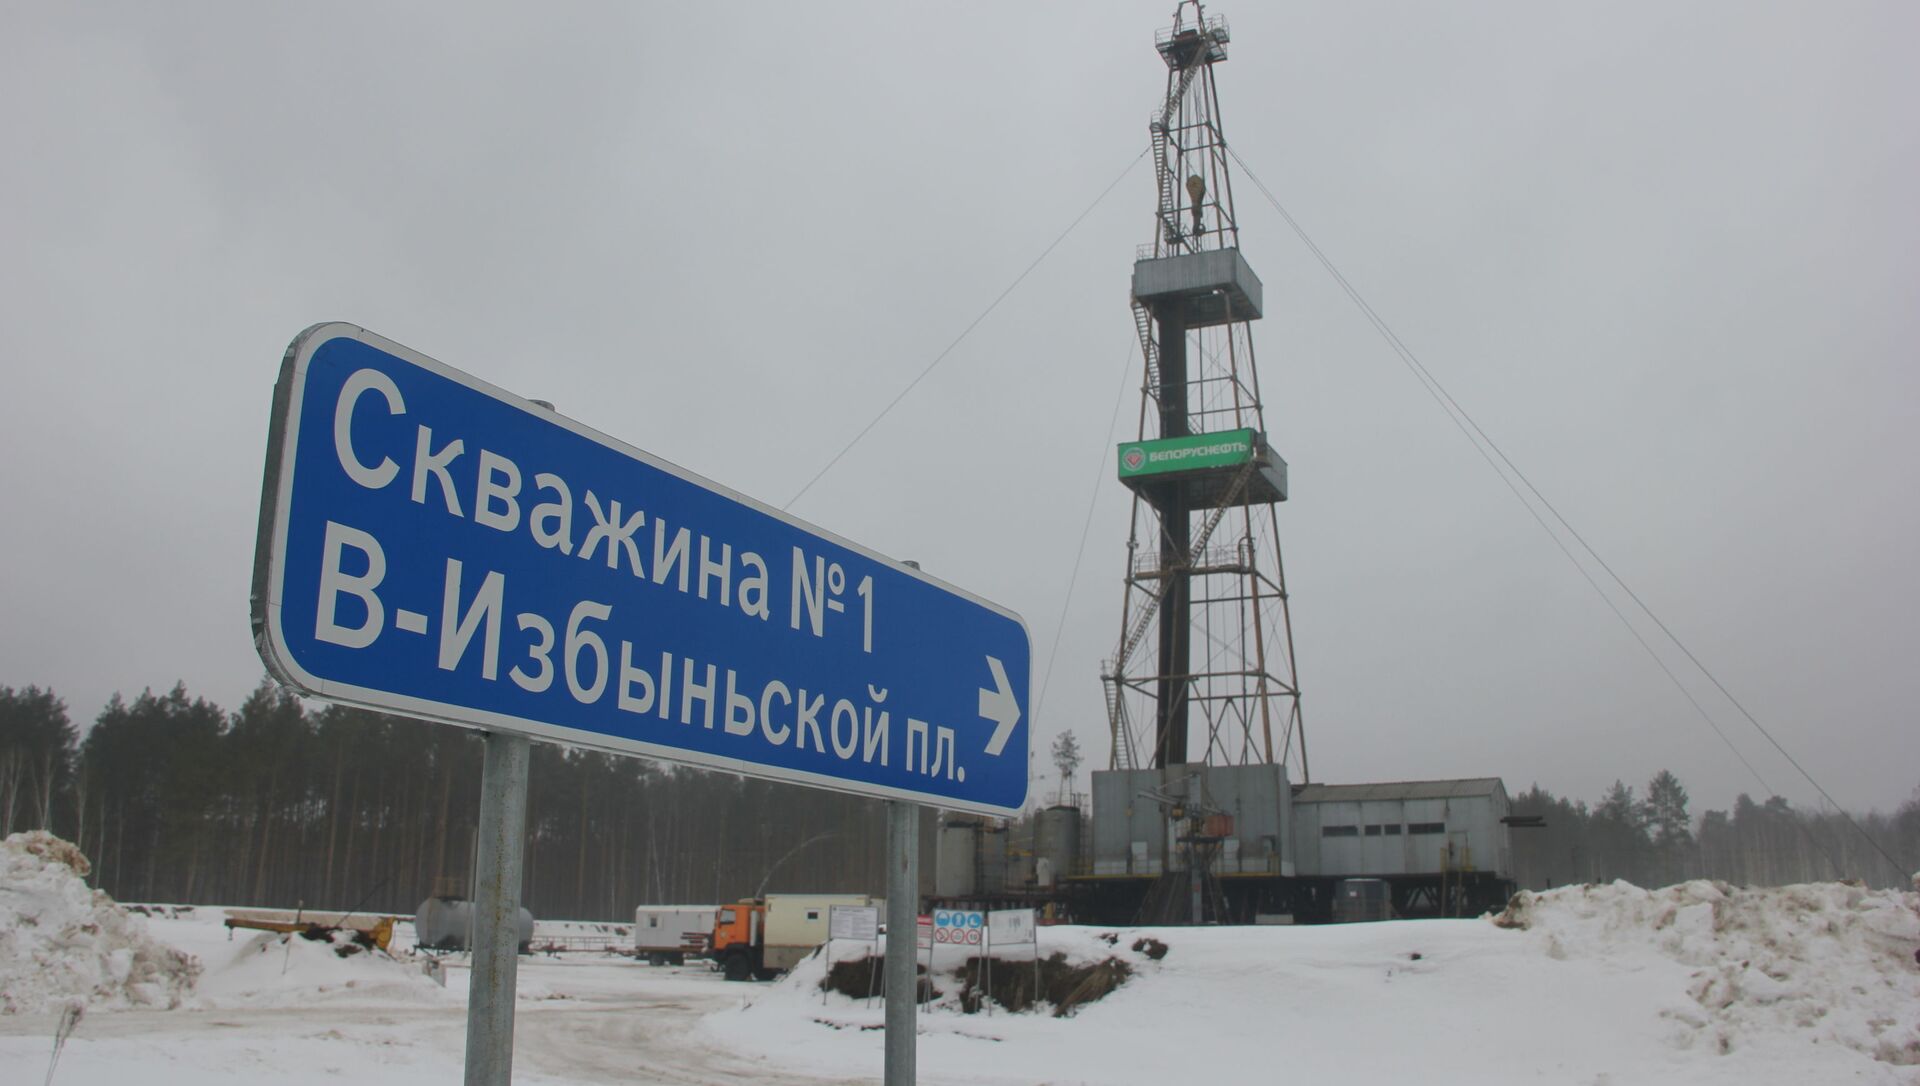 Собственной нефти, по словам экспертов, Беларуси хватит на 30 лет - Sputnik Беларусь, 1920, 24.02.2021